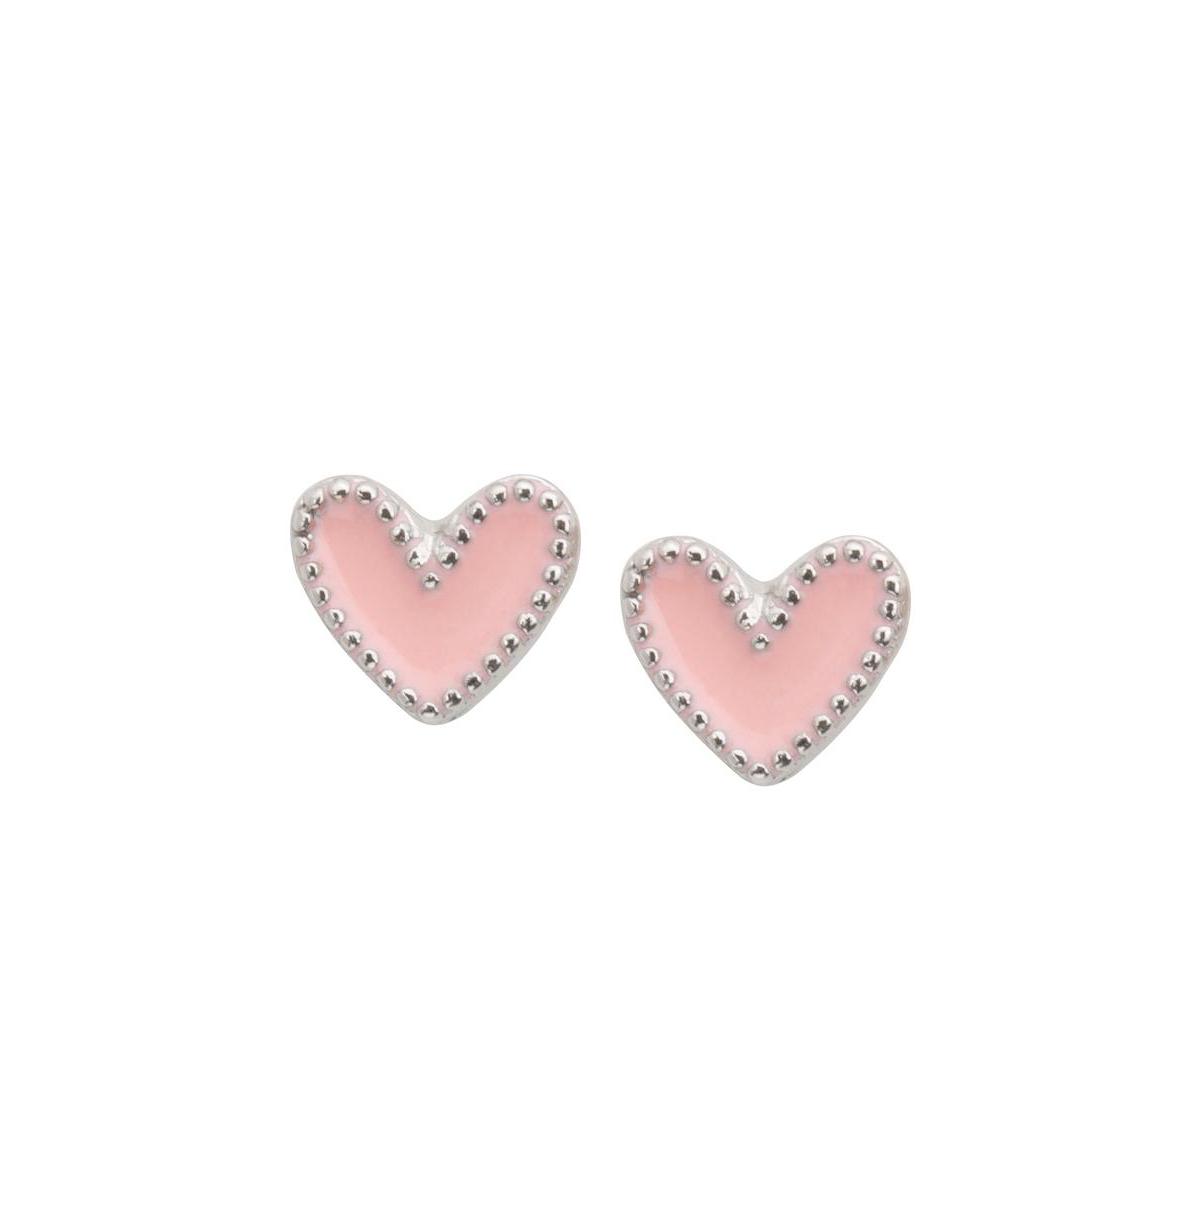 Luca + Danni Heart Stud Earrings in Pink